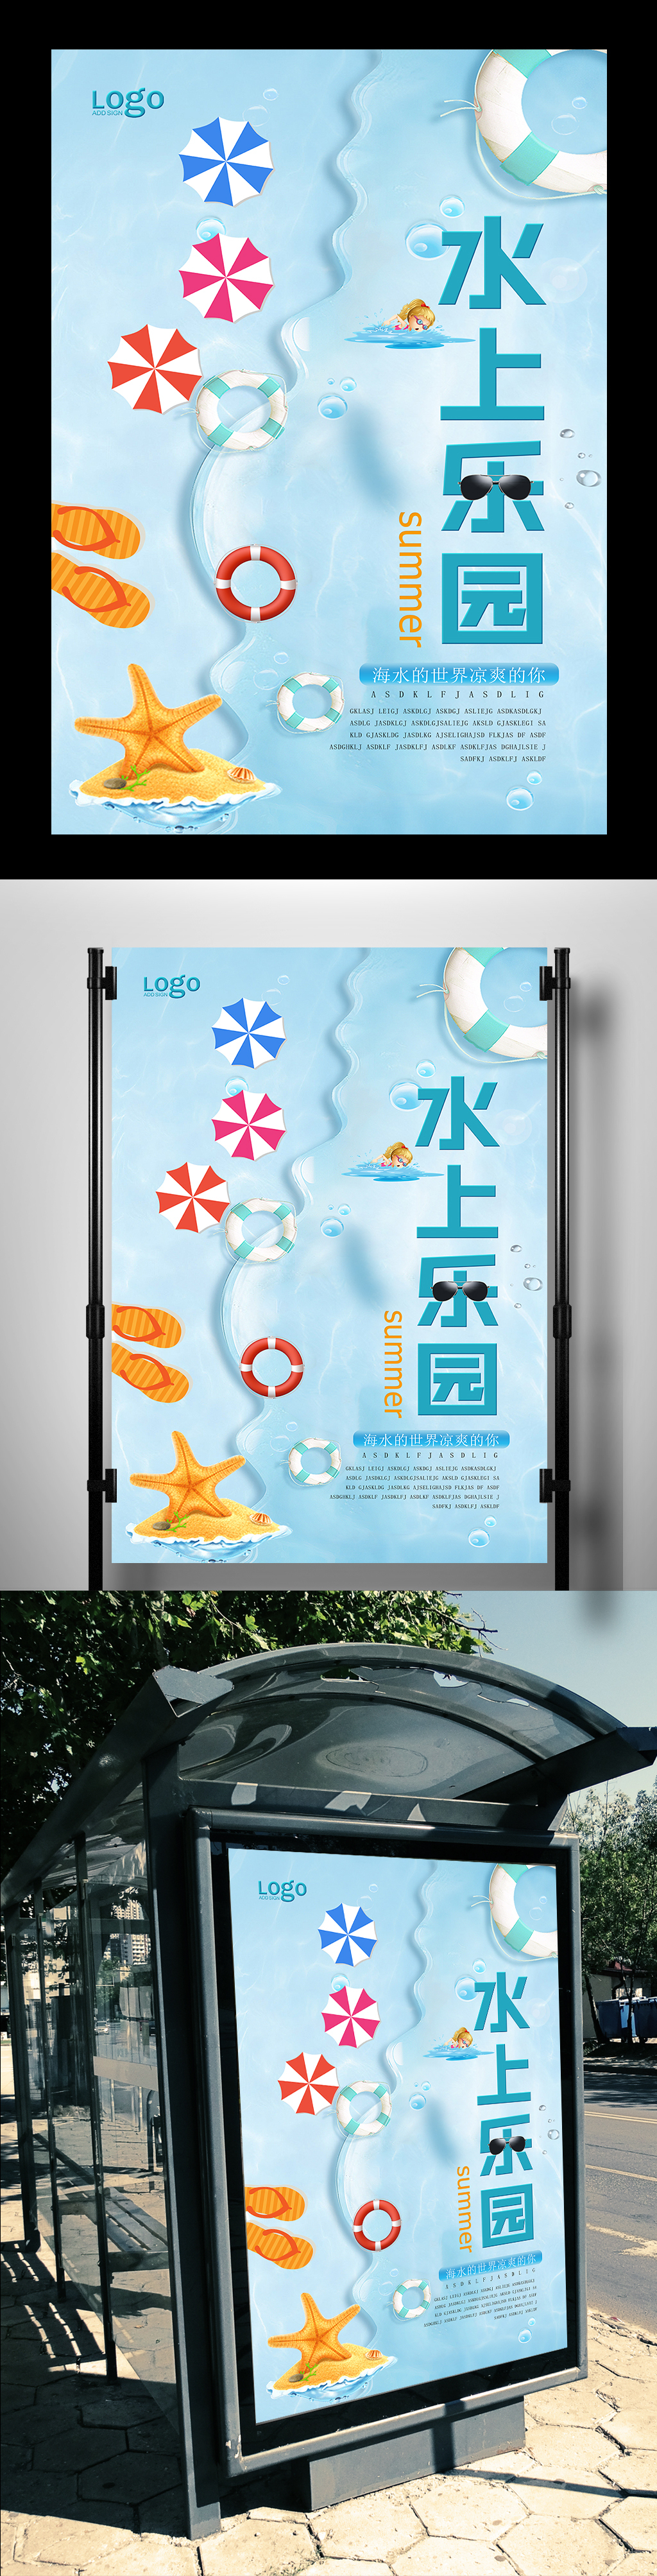 海浪风格水上乐园宣传海报设计图片